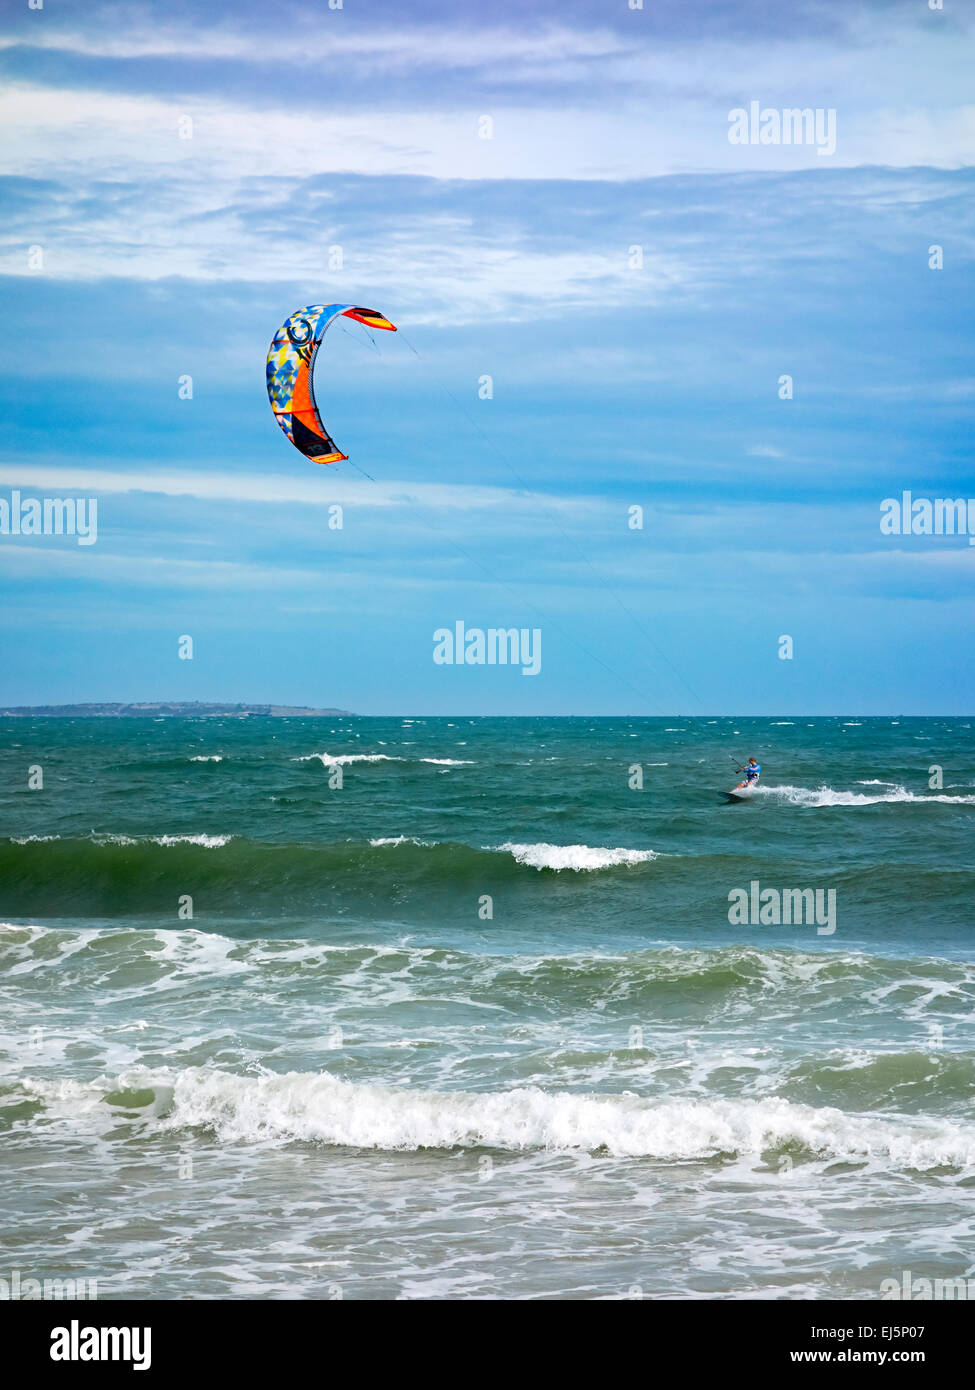 Ein Kiteboarder wird von einem Power Kite vor dem Mui Ne Strand über das Wasser gezogen. Mui Ne, Provinz Binh Thuan, Vietnam. Stockfoto